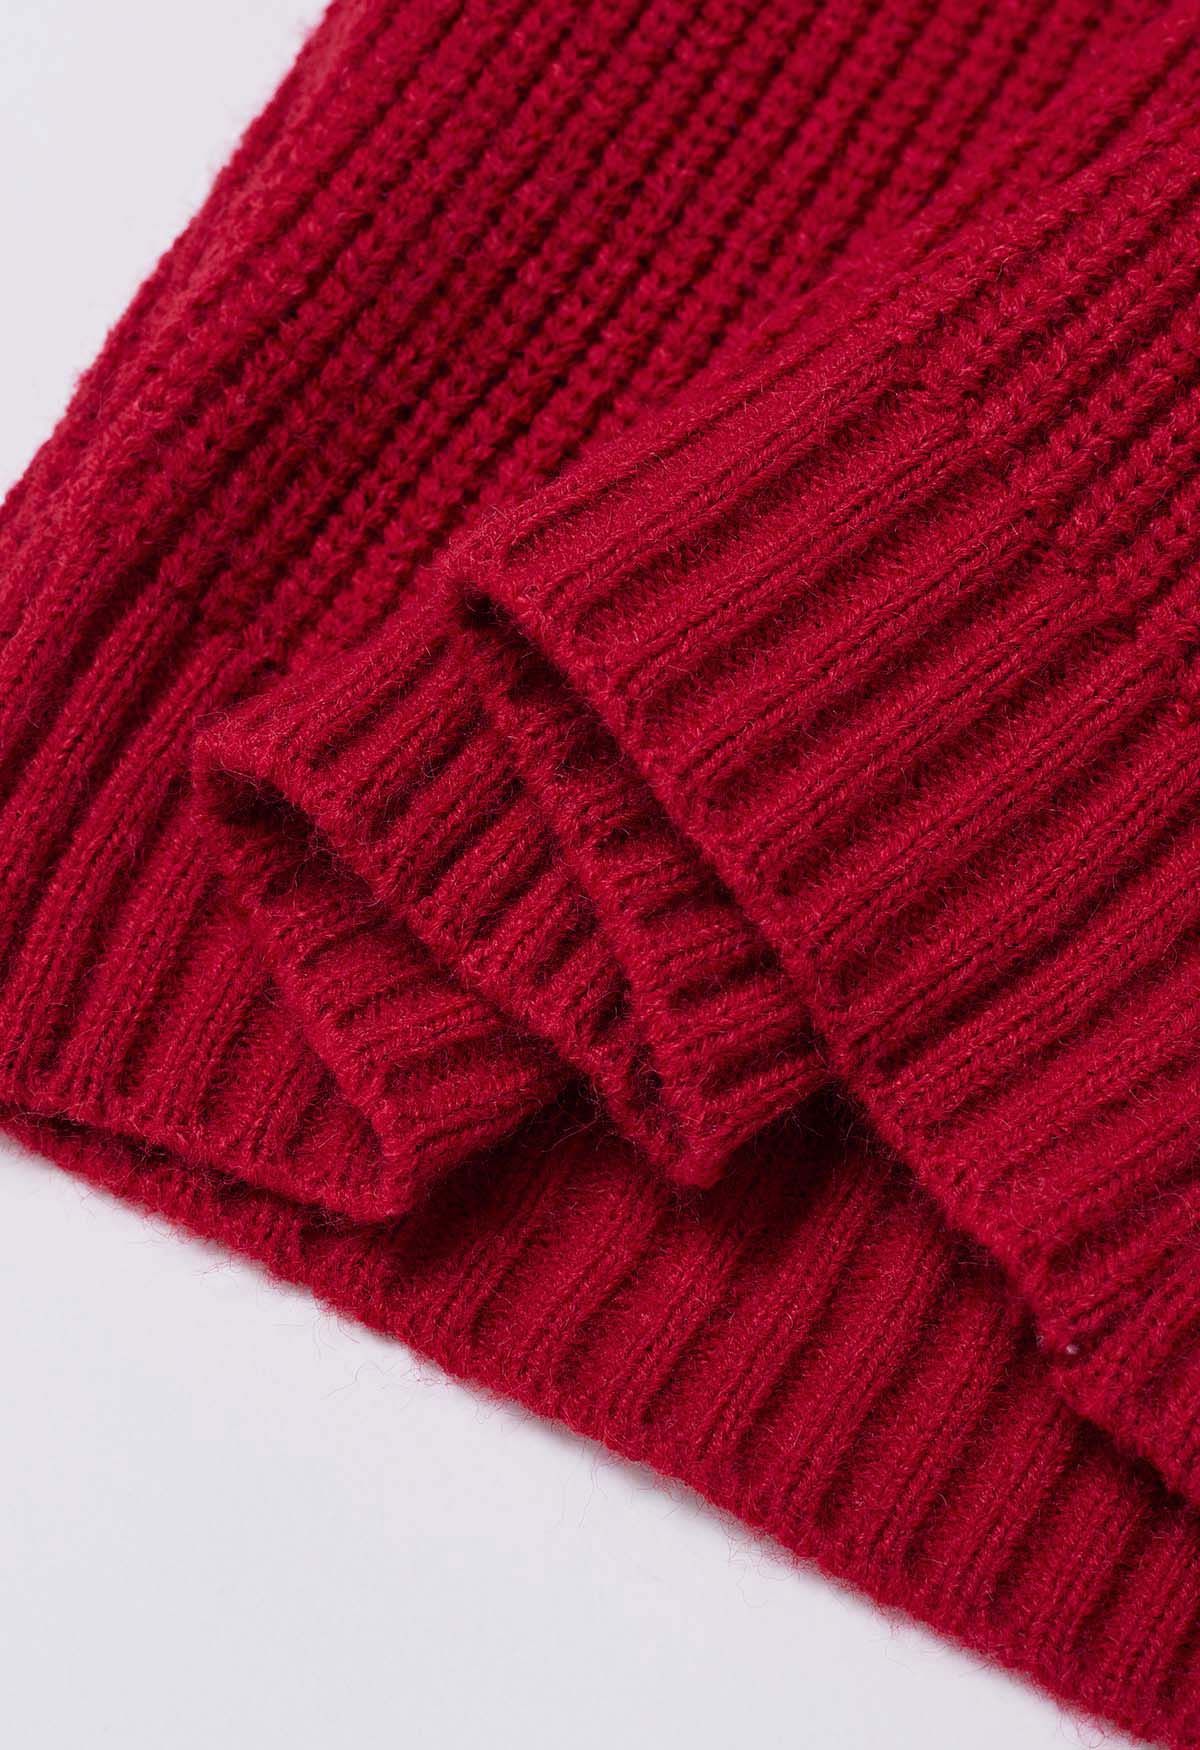 Pull en tricot à manches courtes et col montant en rouge